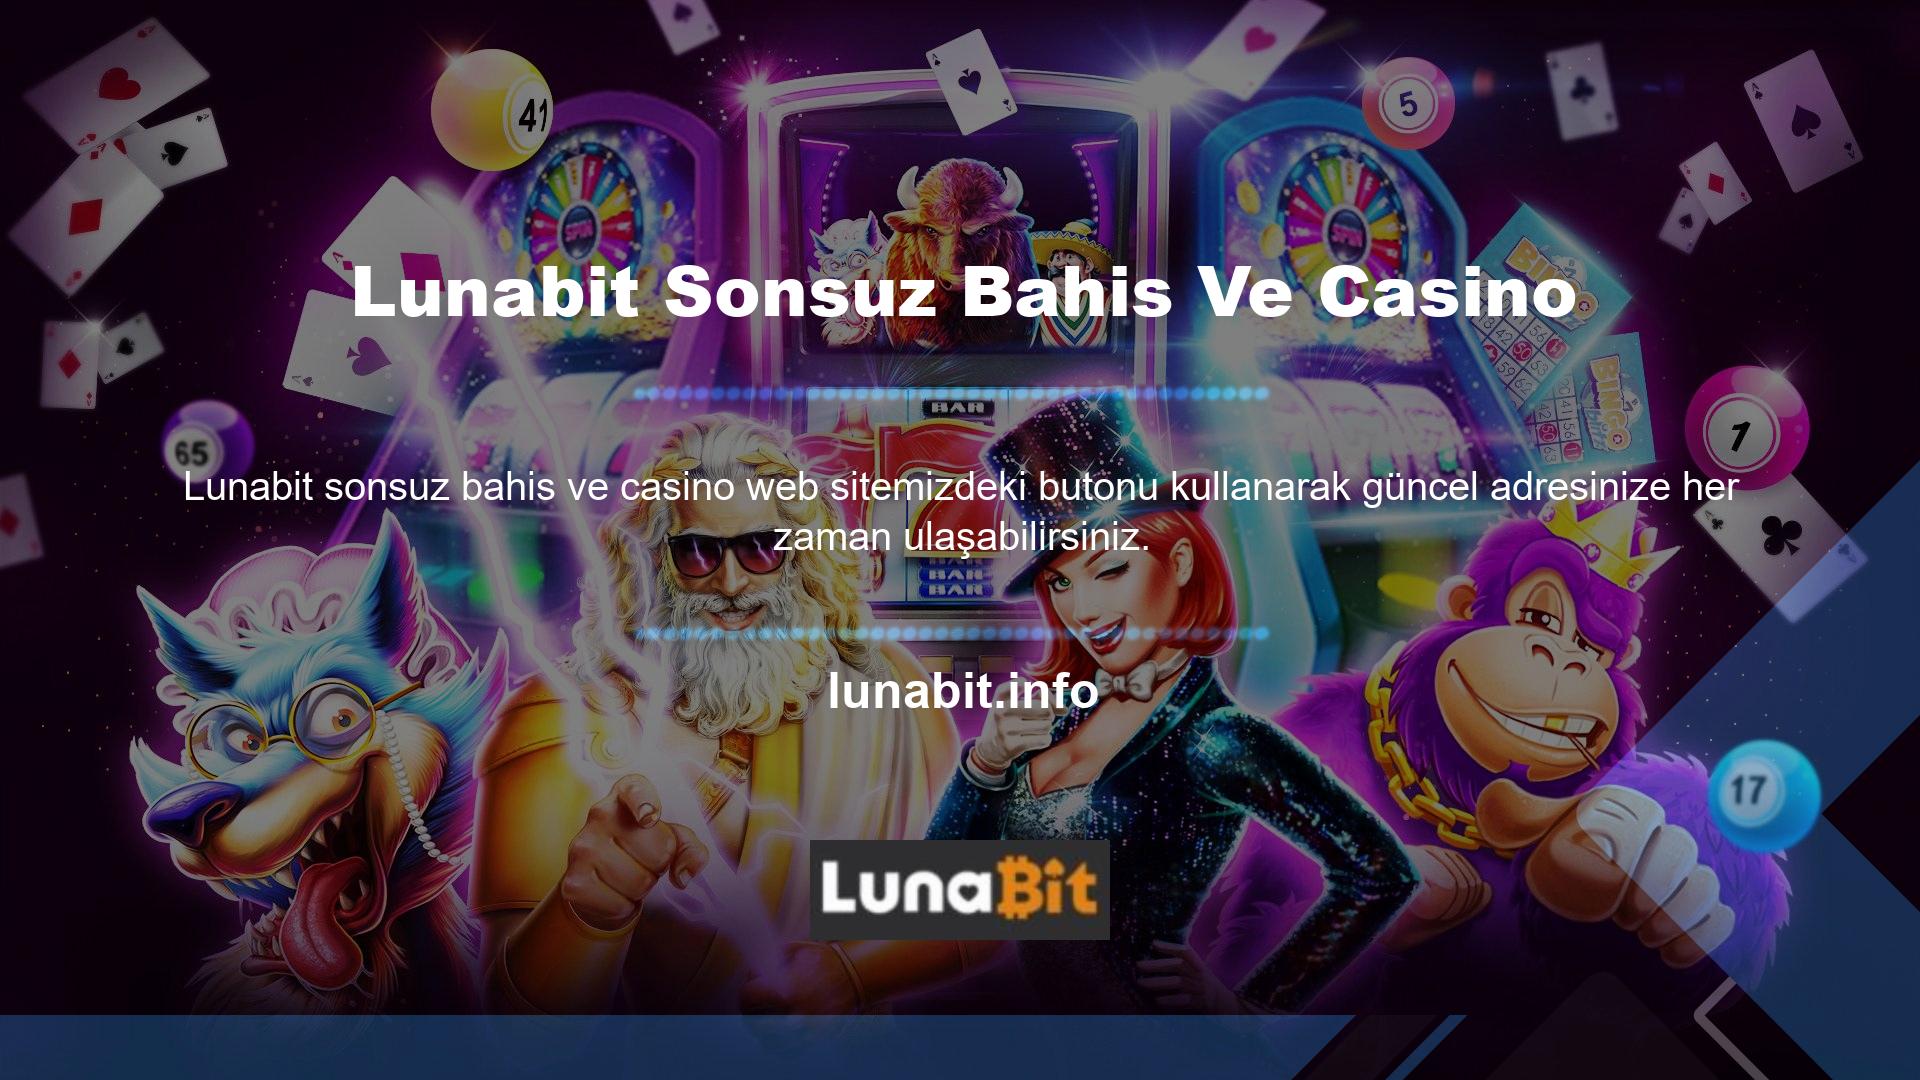 En sık güncellenen web sitelerinden biri olan Lunabit, artık spor bahisleri, canlı bahisler ve casinolarda üstün hizmetler sunmaktadır